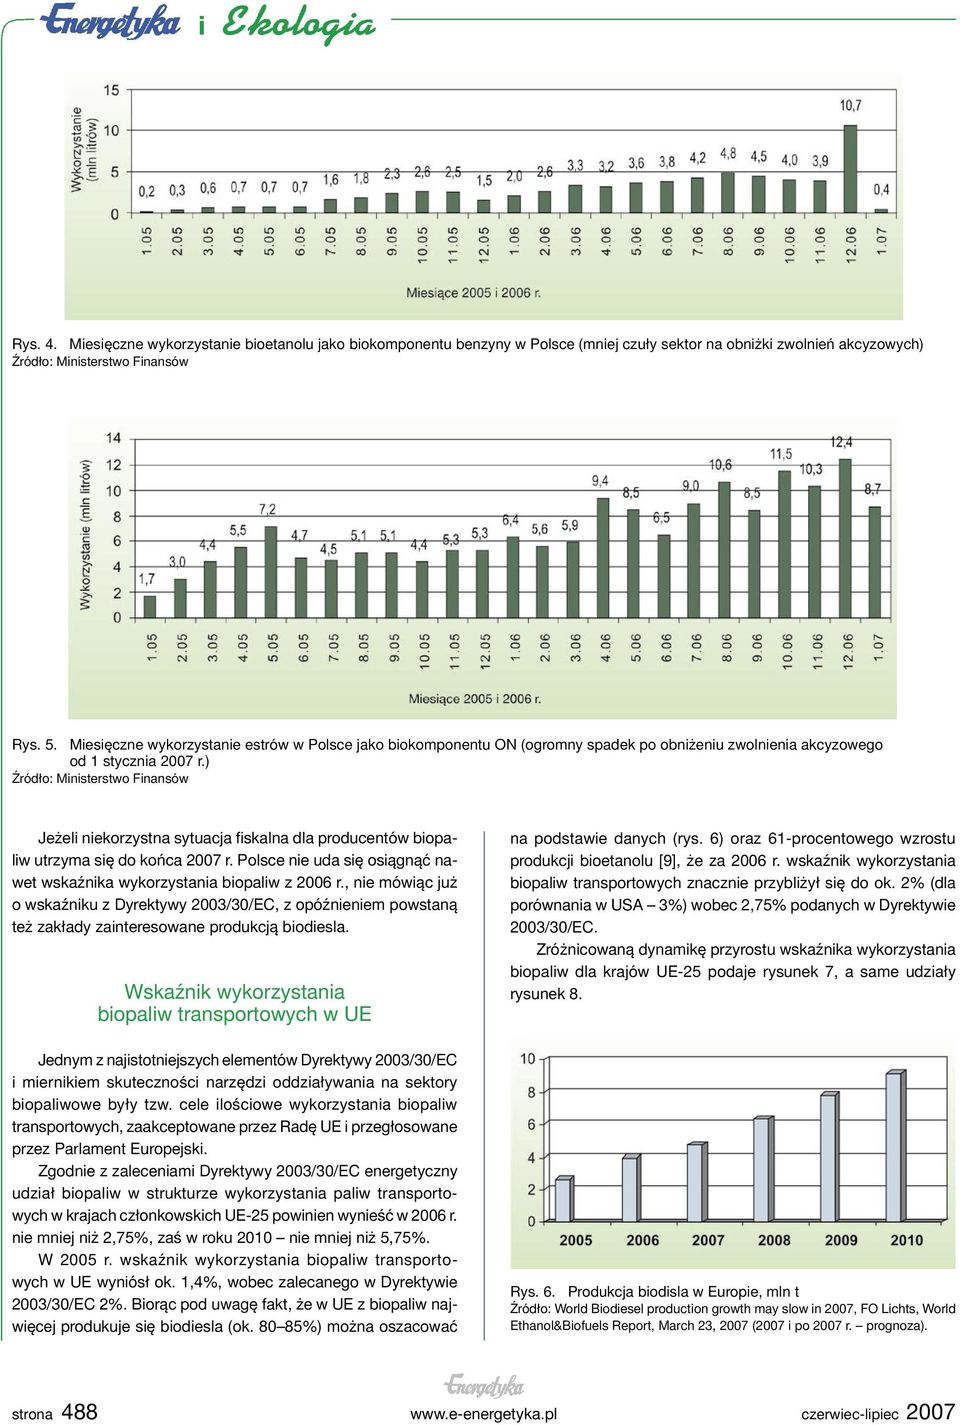 ) Źródło: Ministerstwo Finansów Jeżeli niekorzystna sytuacja fiskalna dla producentów biopaliw utrzyma się do końca 2007 r. Polsce nie uda się osiągnąć nawet wskaźnika wykorzystania biopaliw z 2006 r.